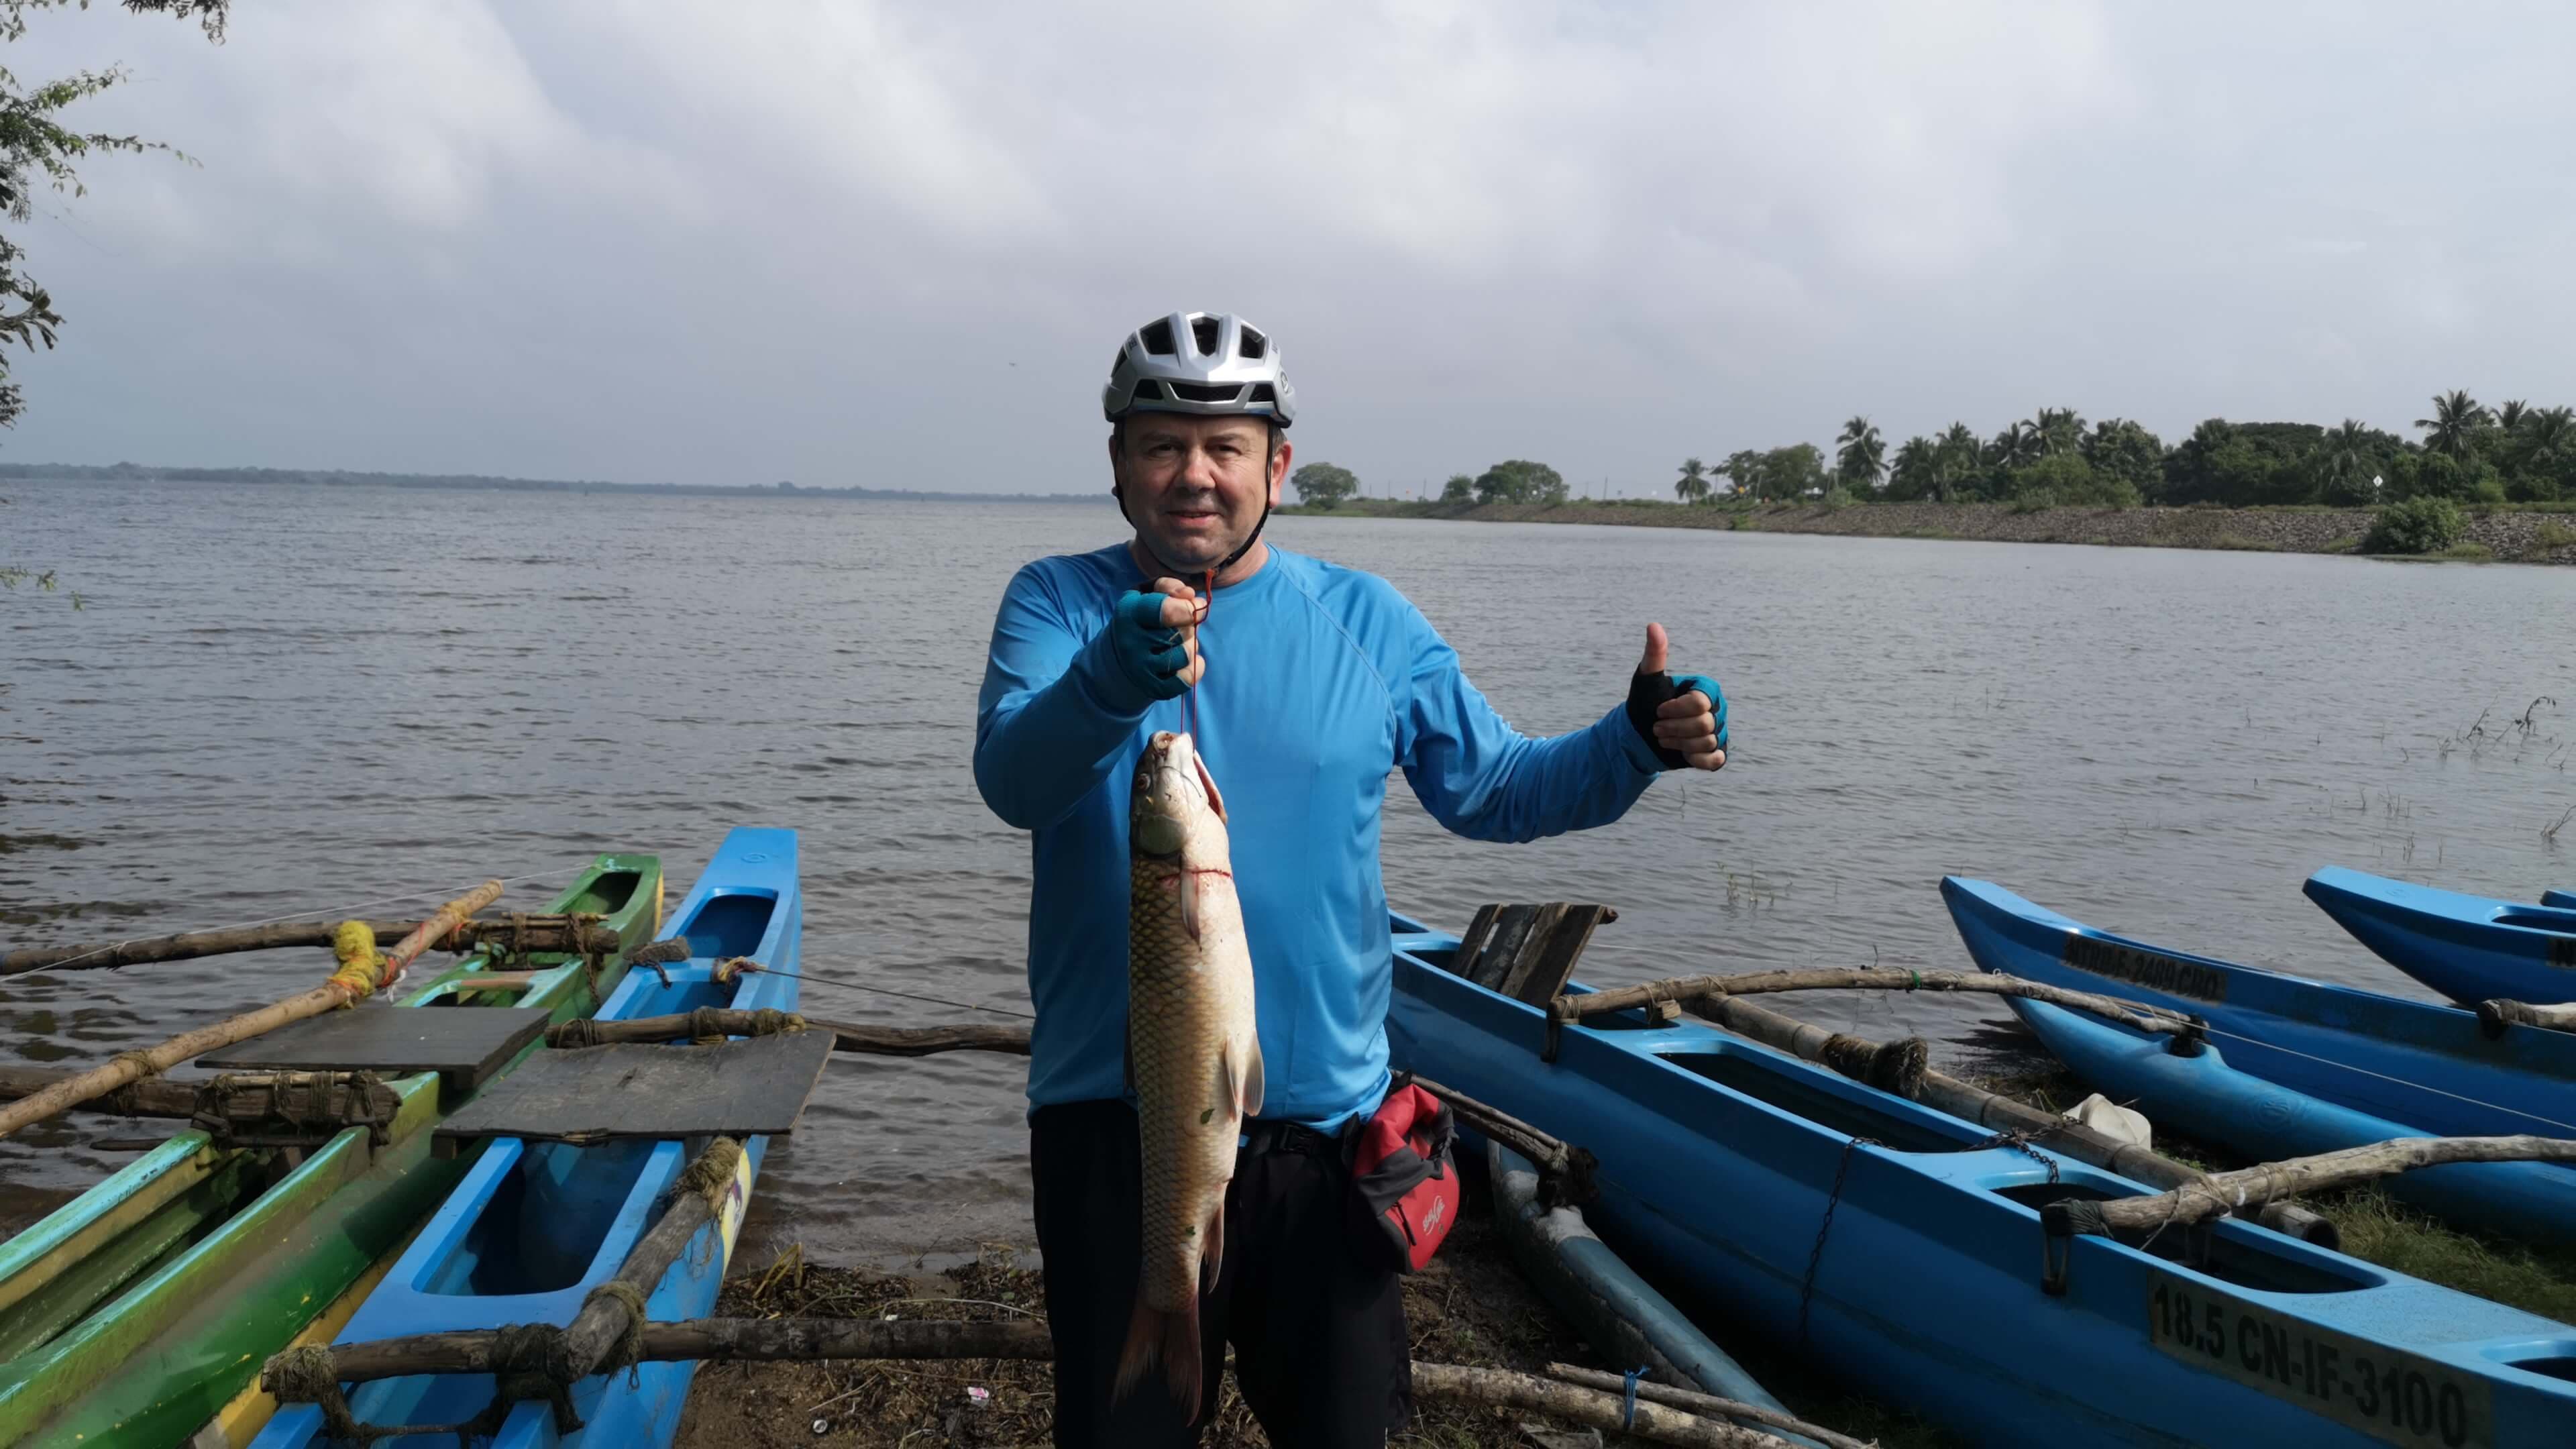 El ciclista explora el estilo de vida de las personas en esta zona pesquera de Sri Lanka